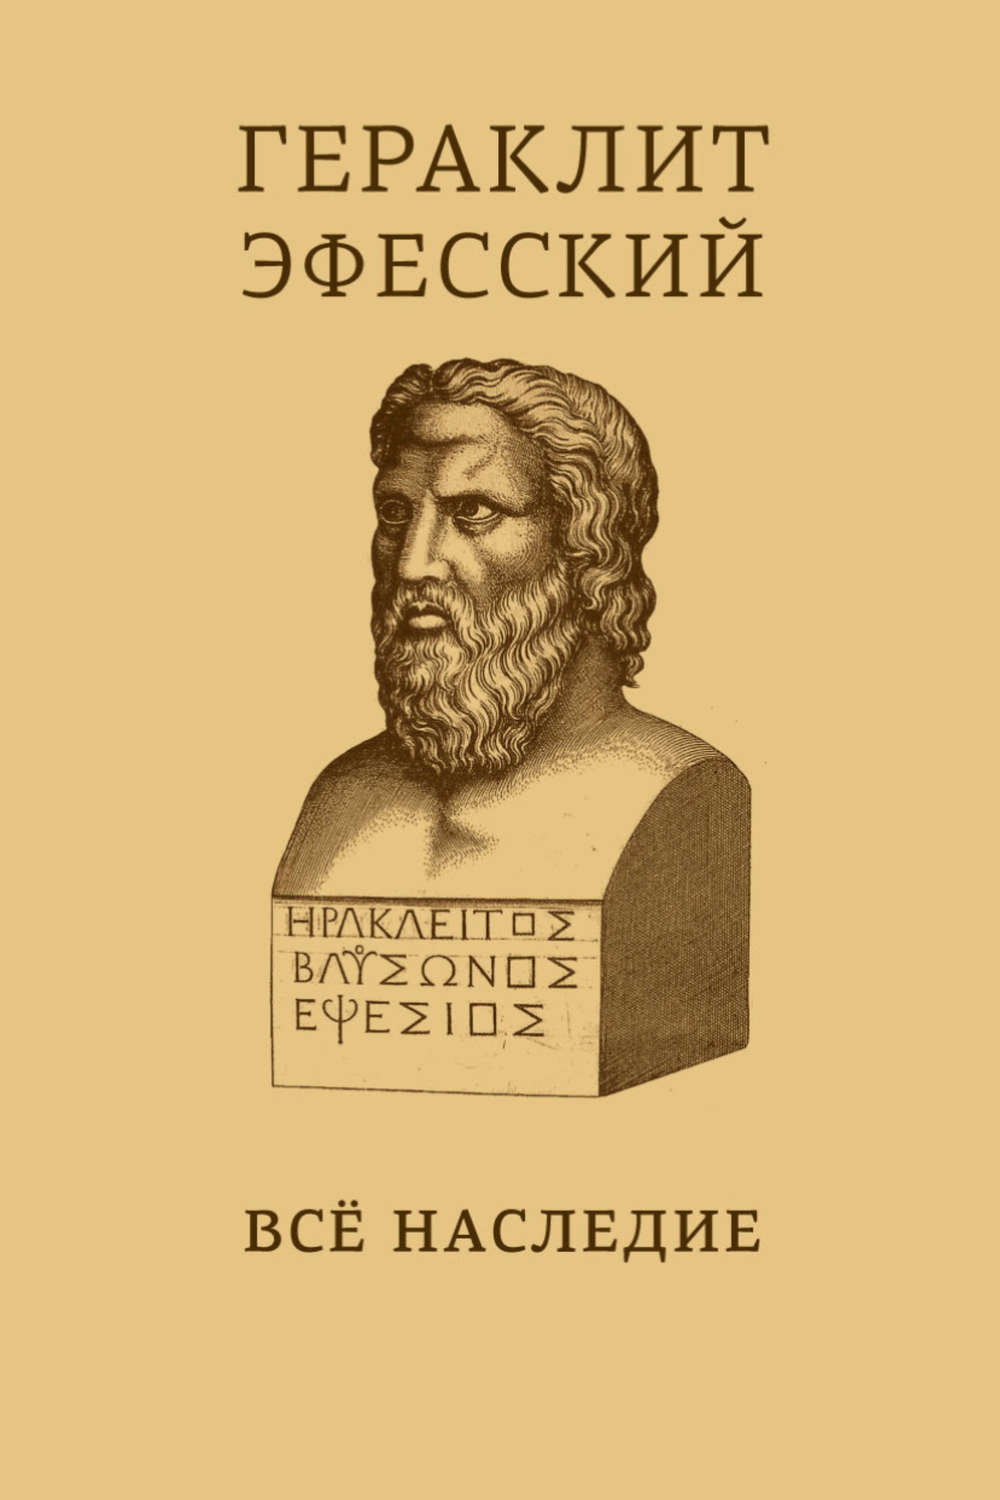 Гераклит эфесский книги скачать